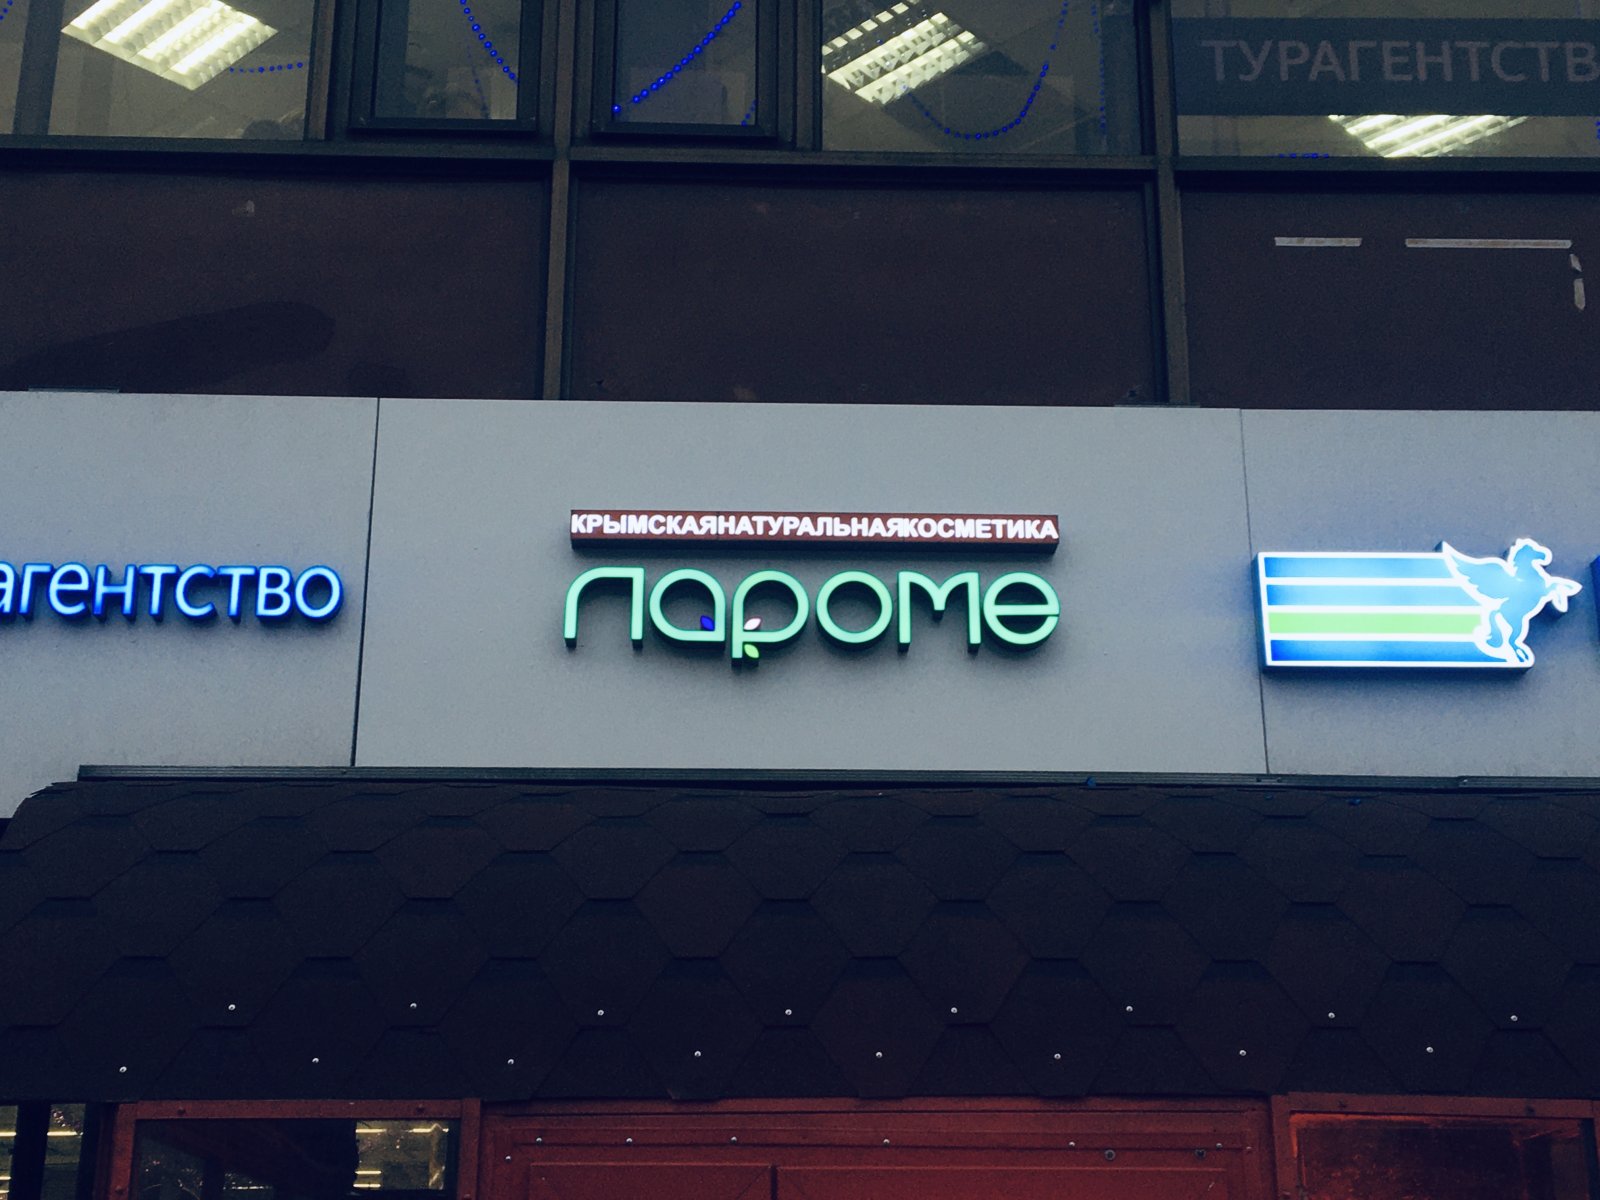 ЛаРоМе, магазин крымской косметики, Таллинская, 26 (2 этаж)